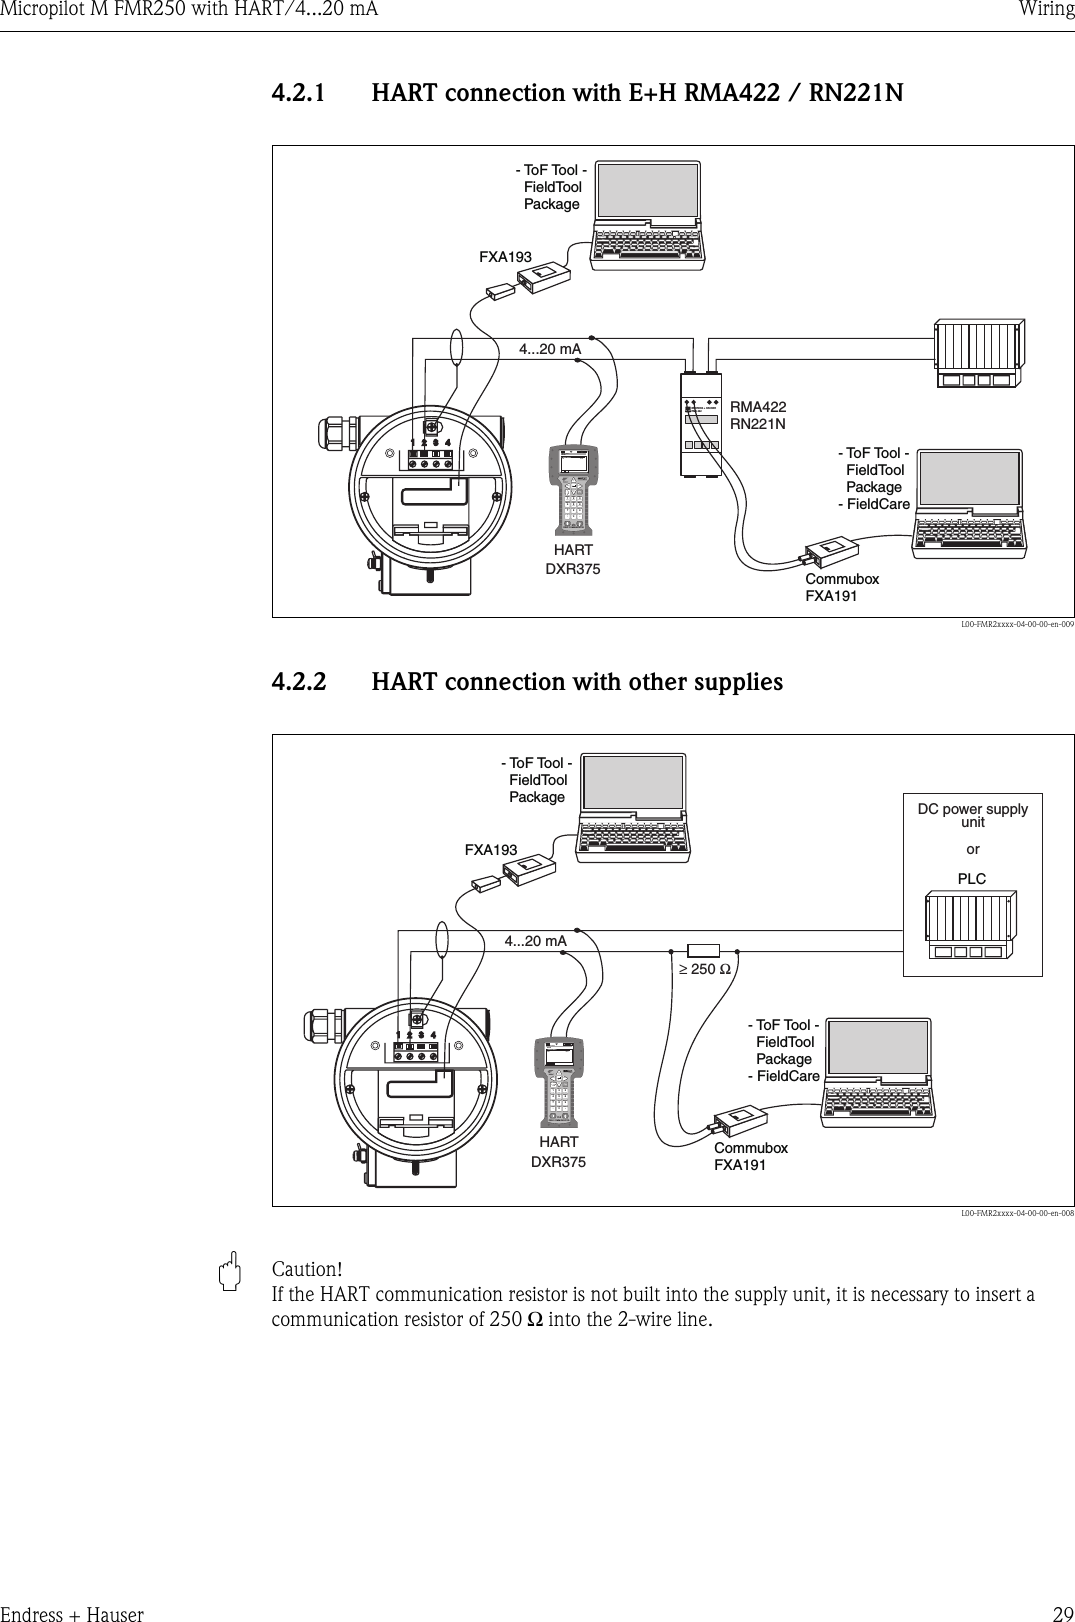 endress hauser level transmitter manual pdf